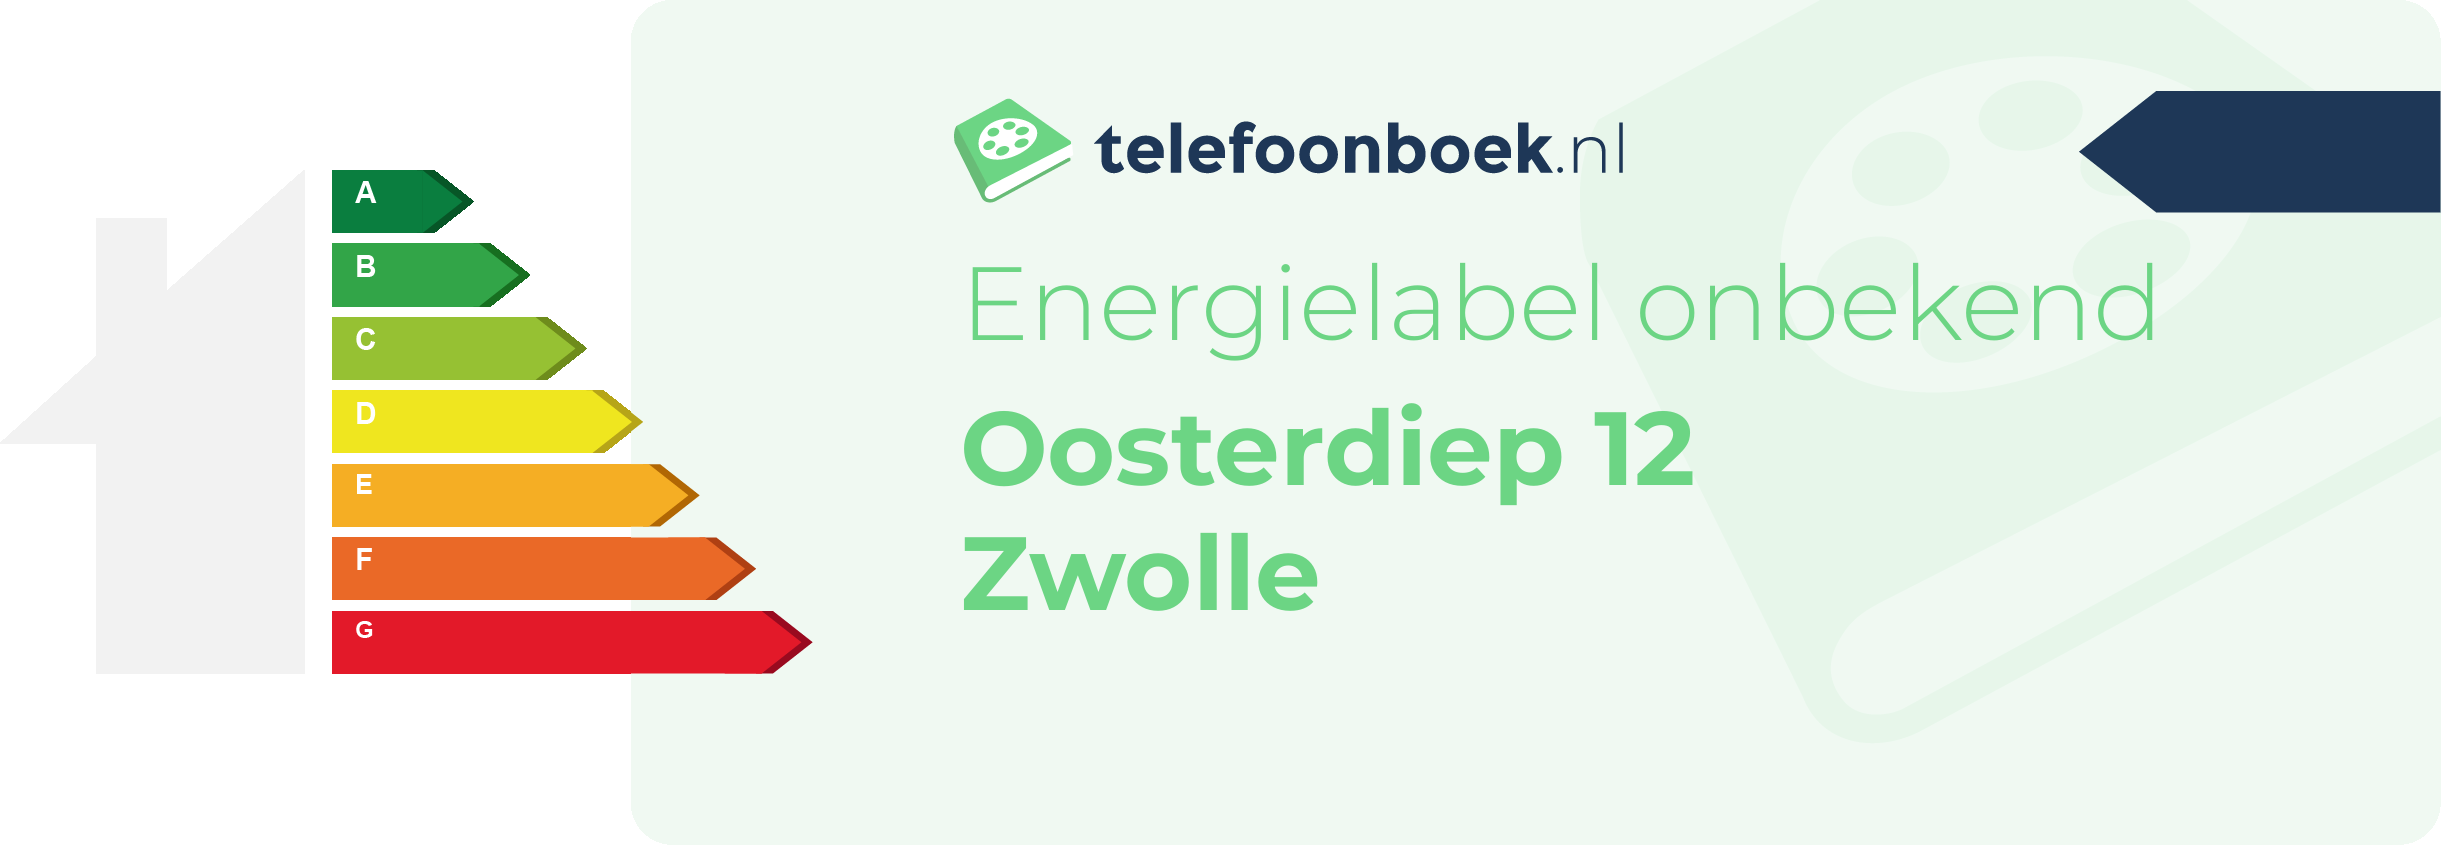 Energielabel Oosterdiep 12 Zwolle